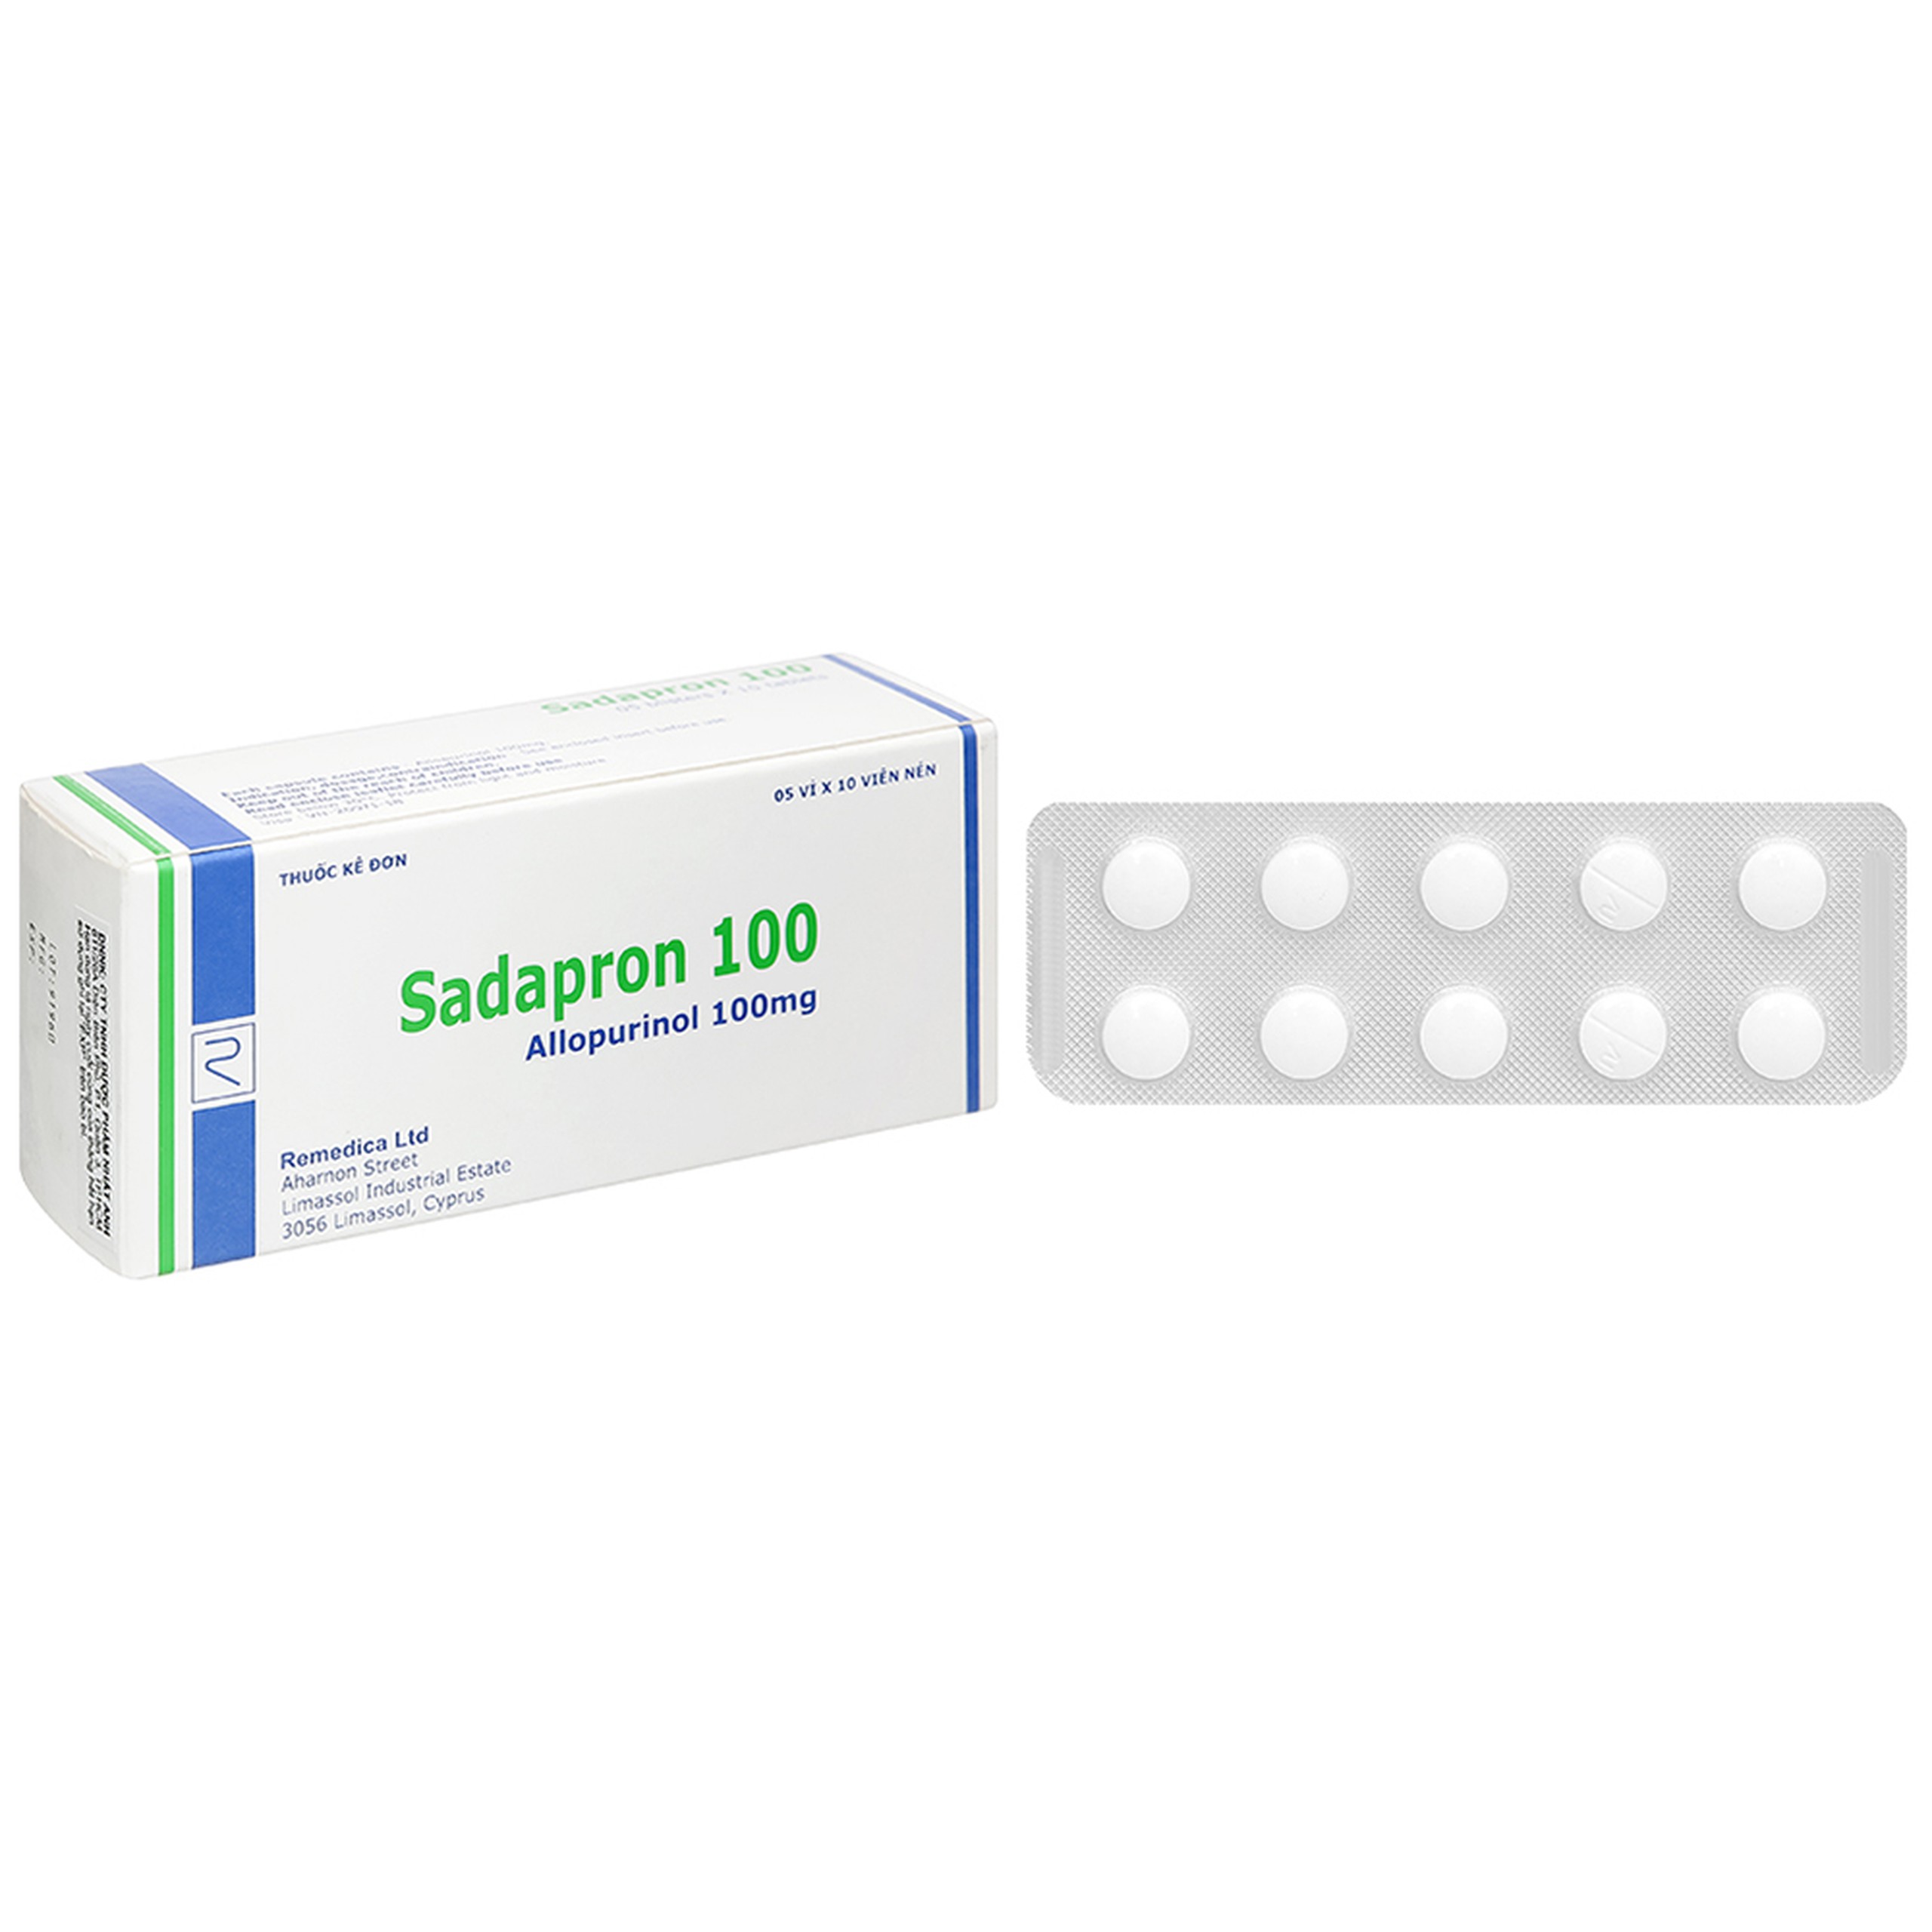 Thuốc Sadapron 100 Remedica điều trị chứng tăng acid uric máu tiên phát, bệnh gout (5 vỉ x 10 viên)